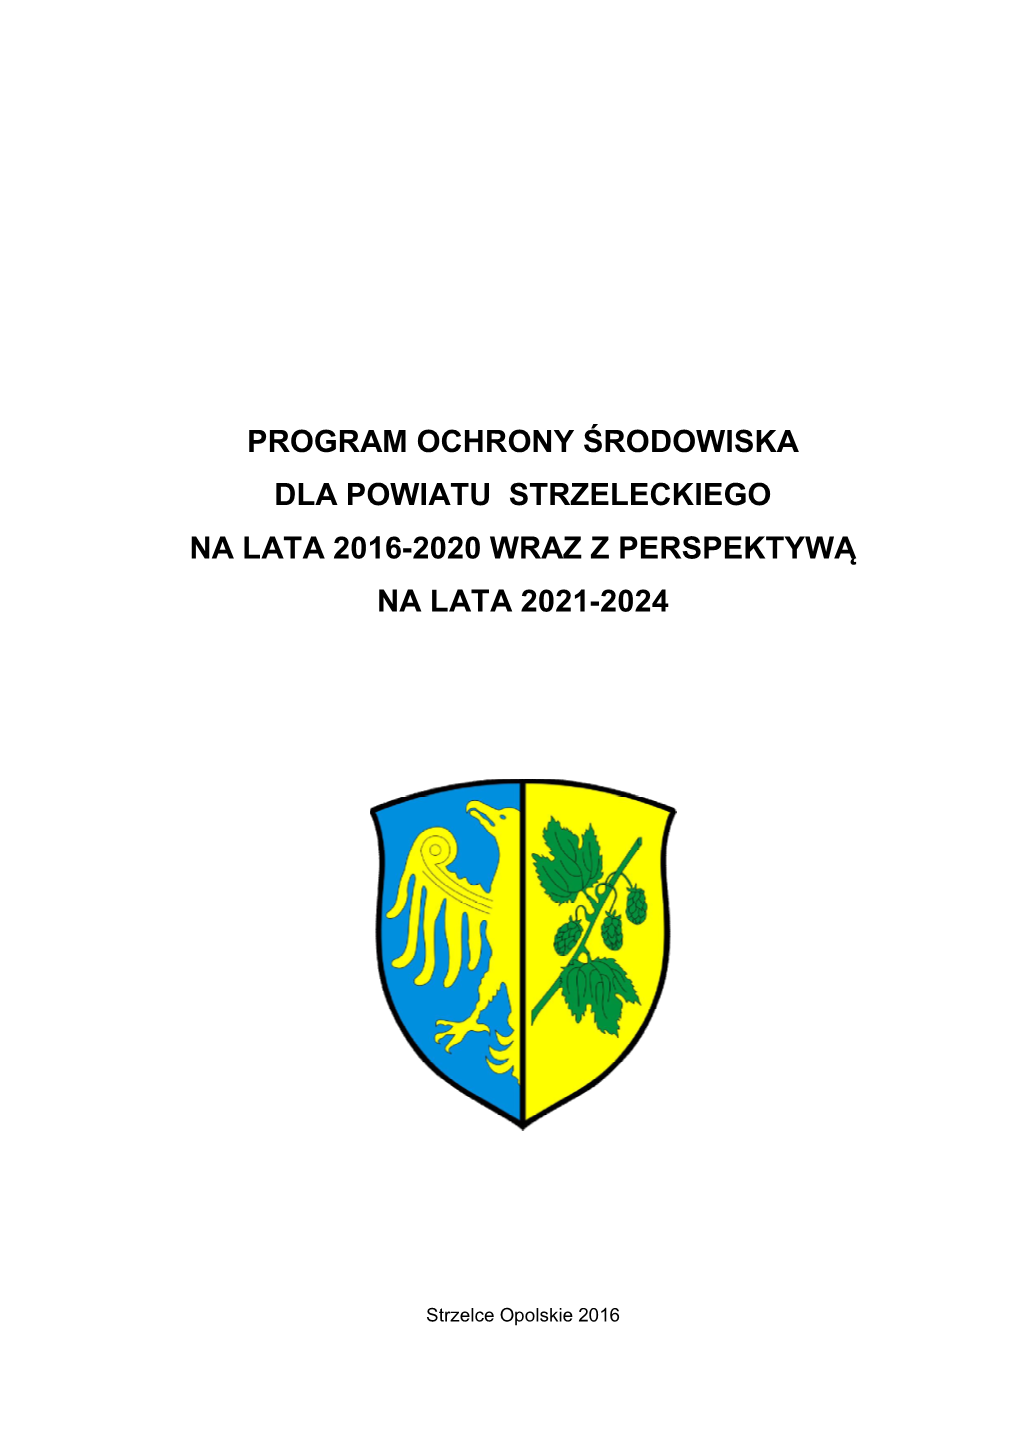 Program Ochrony Środowiska Dla Powiatu Strzeleckiego Na Lata 2016-2020 Wraz Z Perspektywą Na Lata 2021-2024